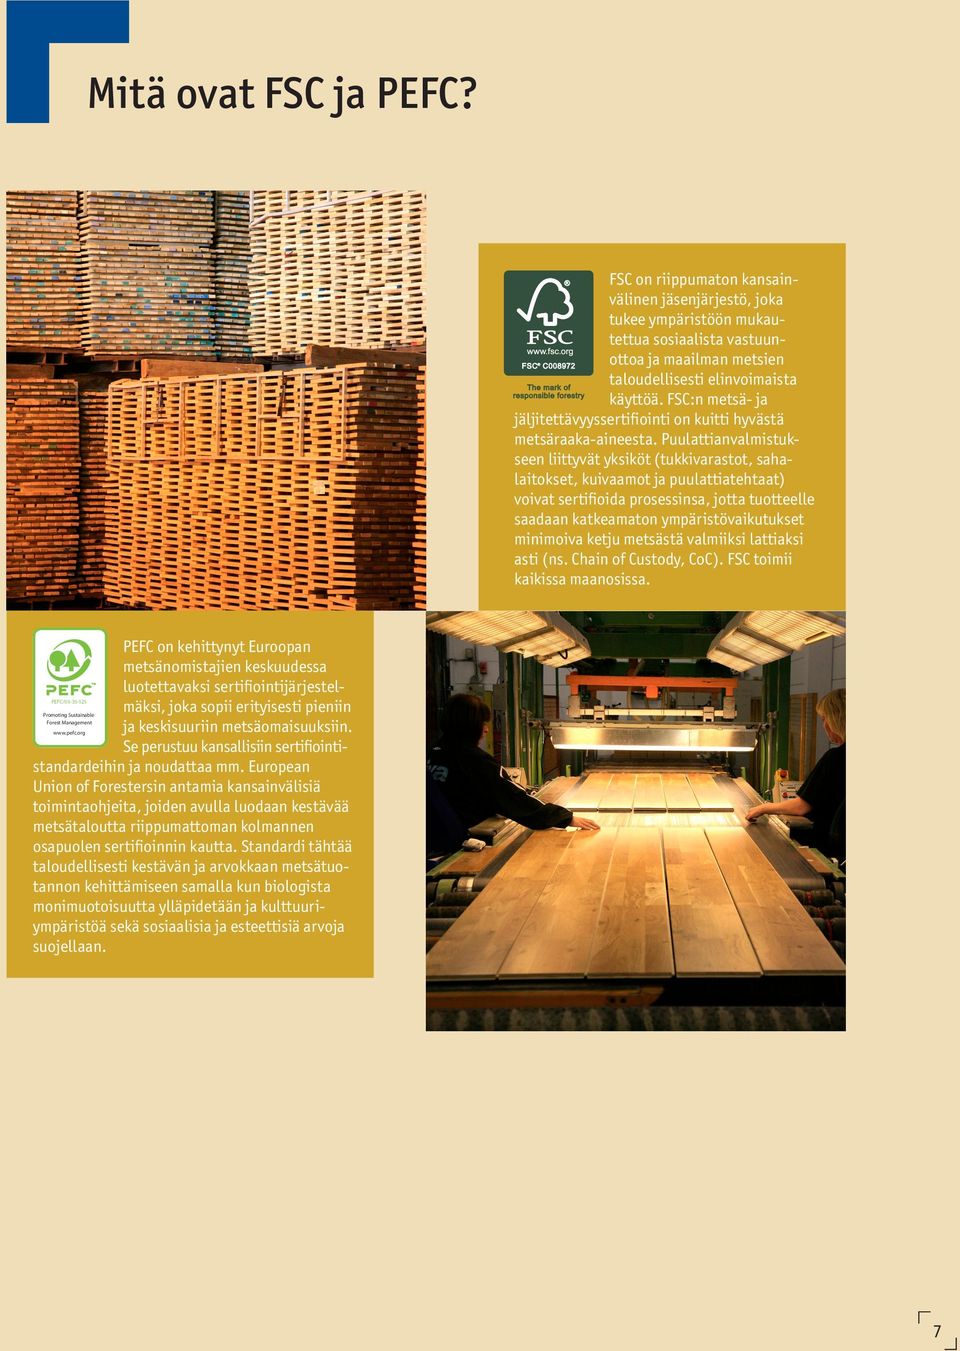 Puulattianvalmistukseen liittyvät yksiköt (tukkivarastot, sahalaitokset, kuivaamot ja puulattiatehtaat) voivat sertifioida prosessinsa, jotta tuotteelle saadaan katkeamaton ympäristövaikutukset